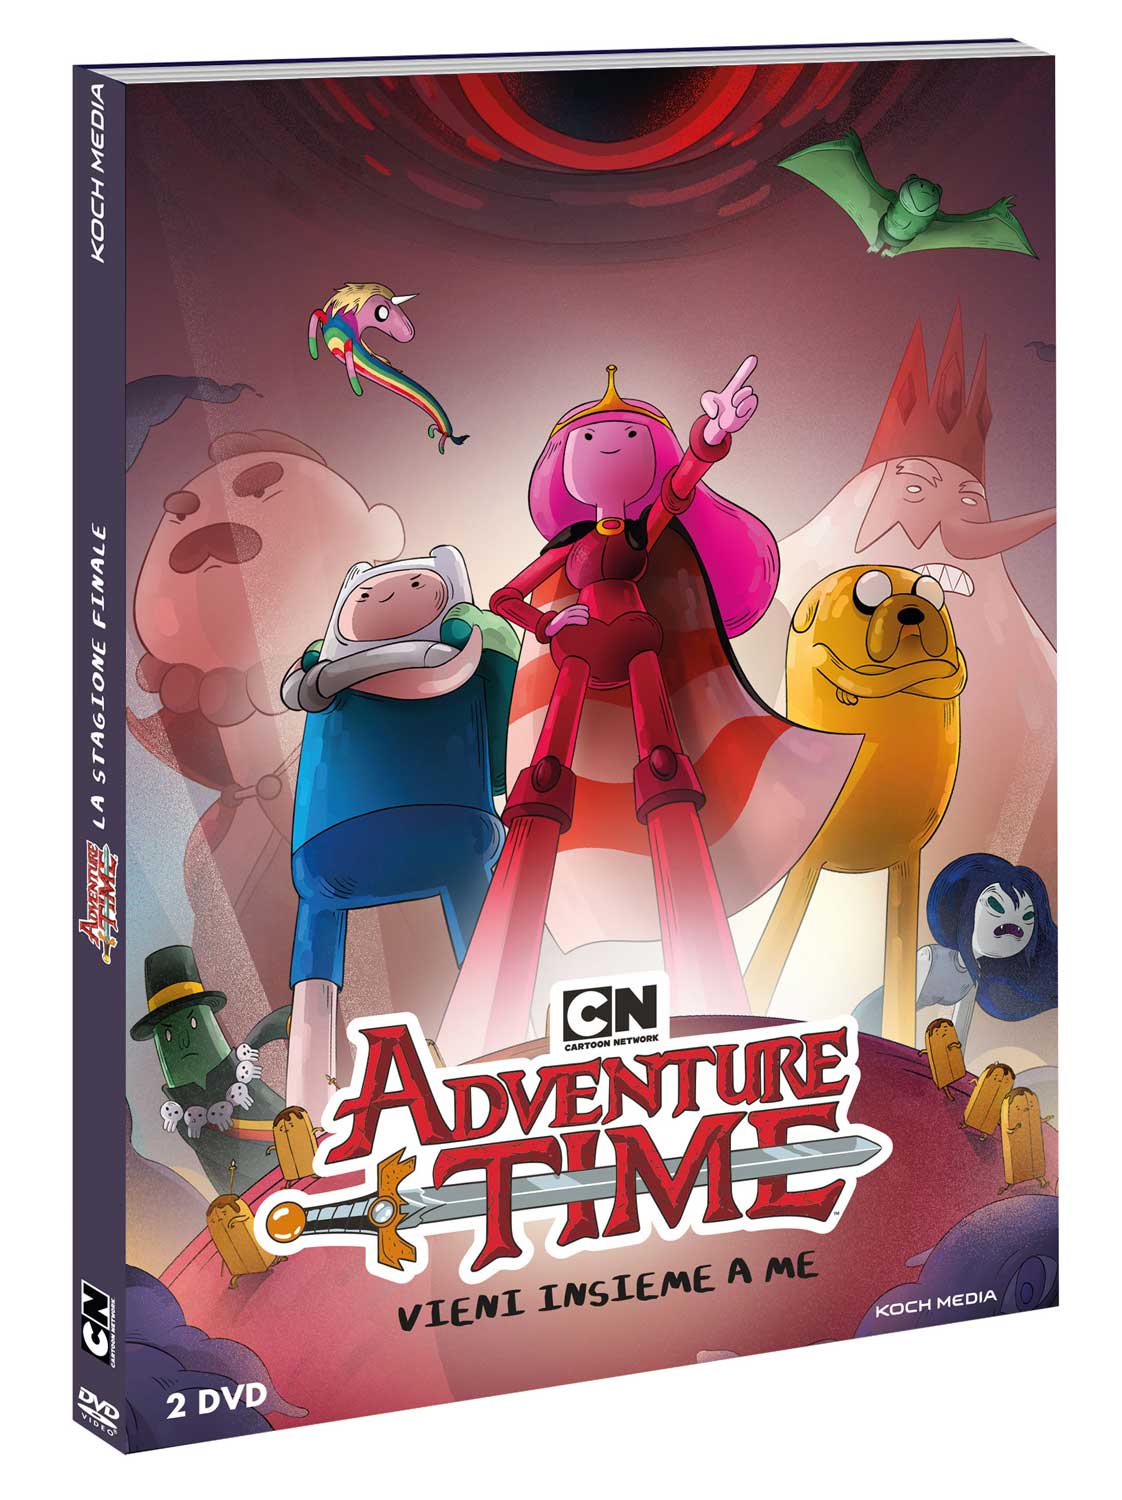 Dvd Adventure Time (2 Dvd) NUOVO SIGILLATO, EDIZIONE DEL 12/02/2019 SUBITO DISPONIBILE